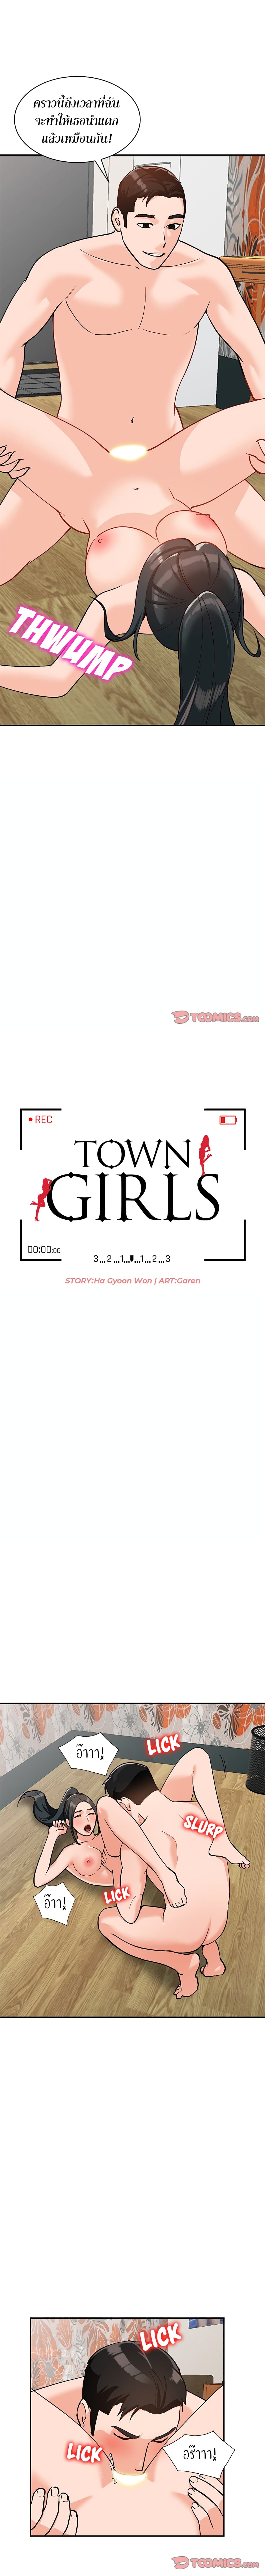 Town Girls 32-32